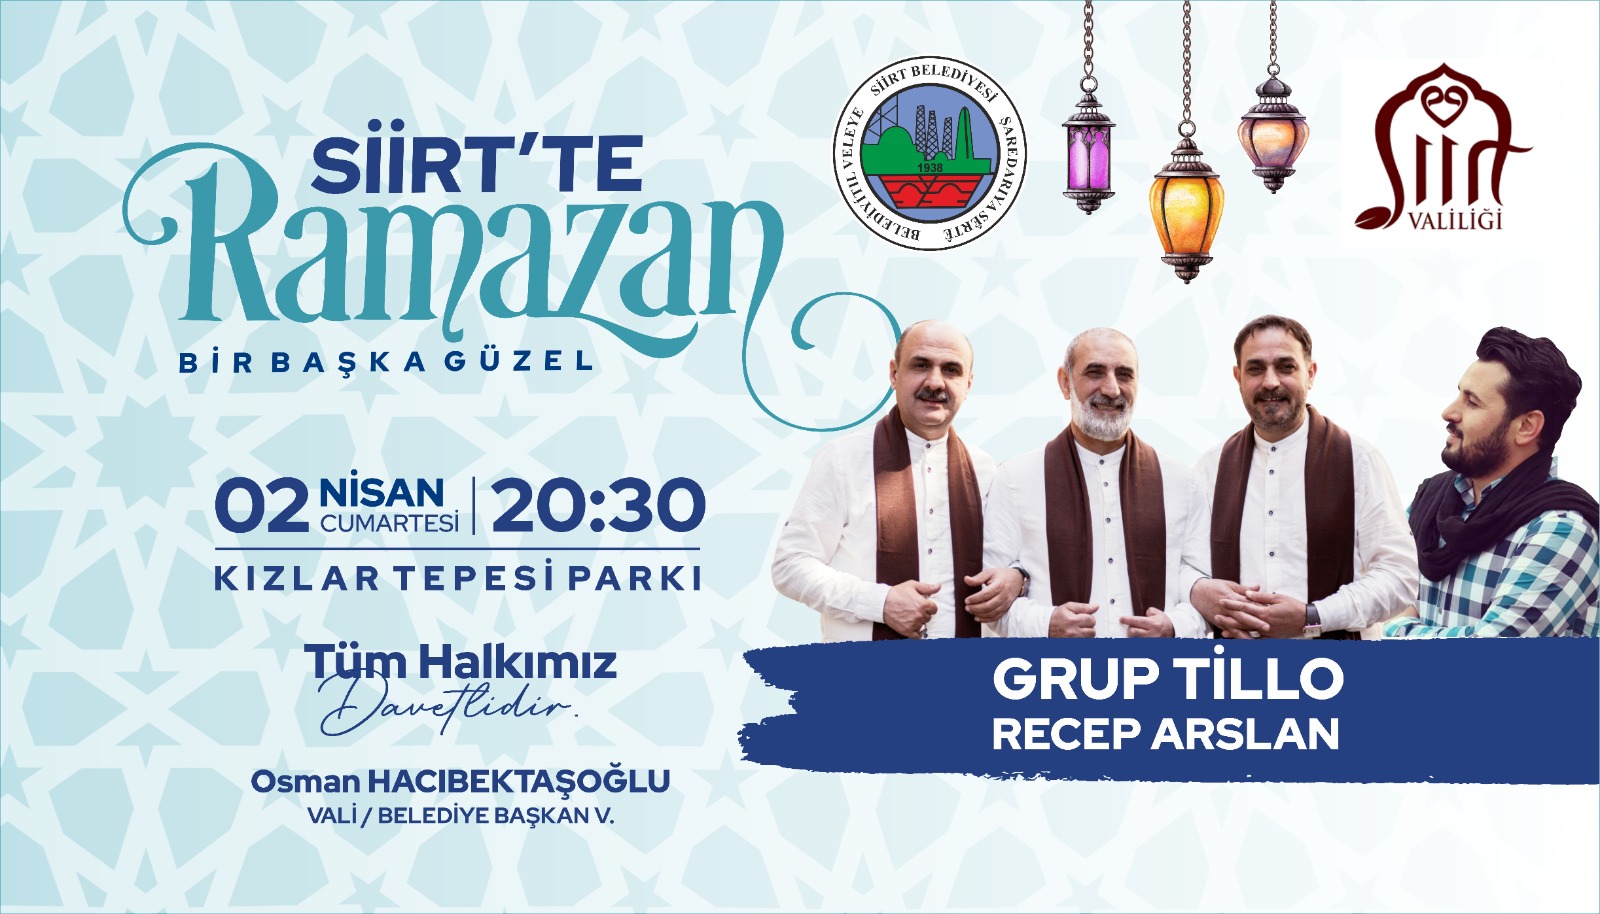 Siirt Belediyesi Ramazan Etkinlikleri Yarın Başlıyor